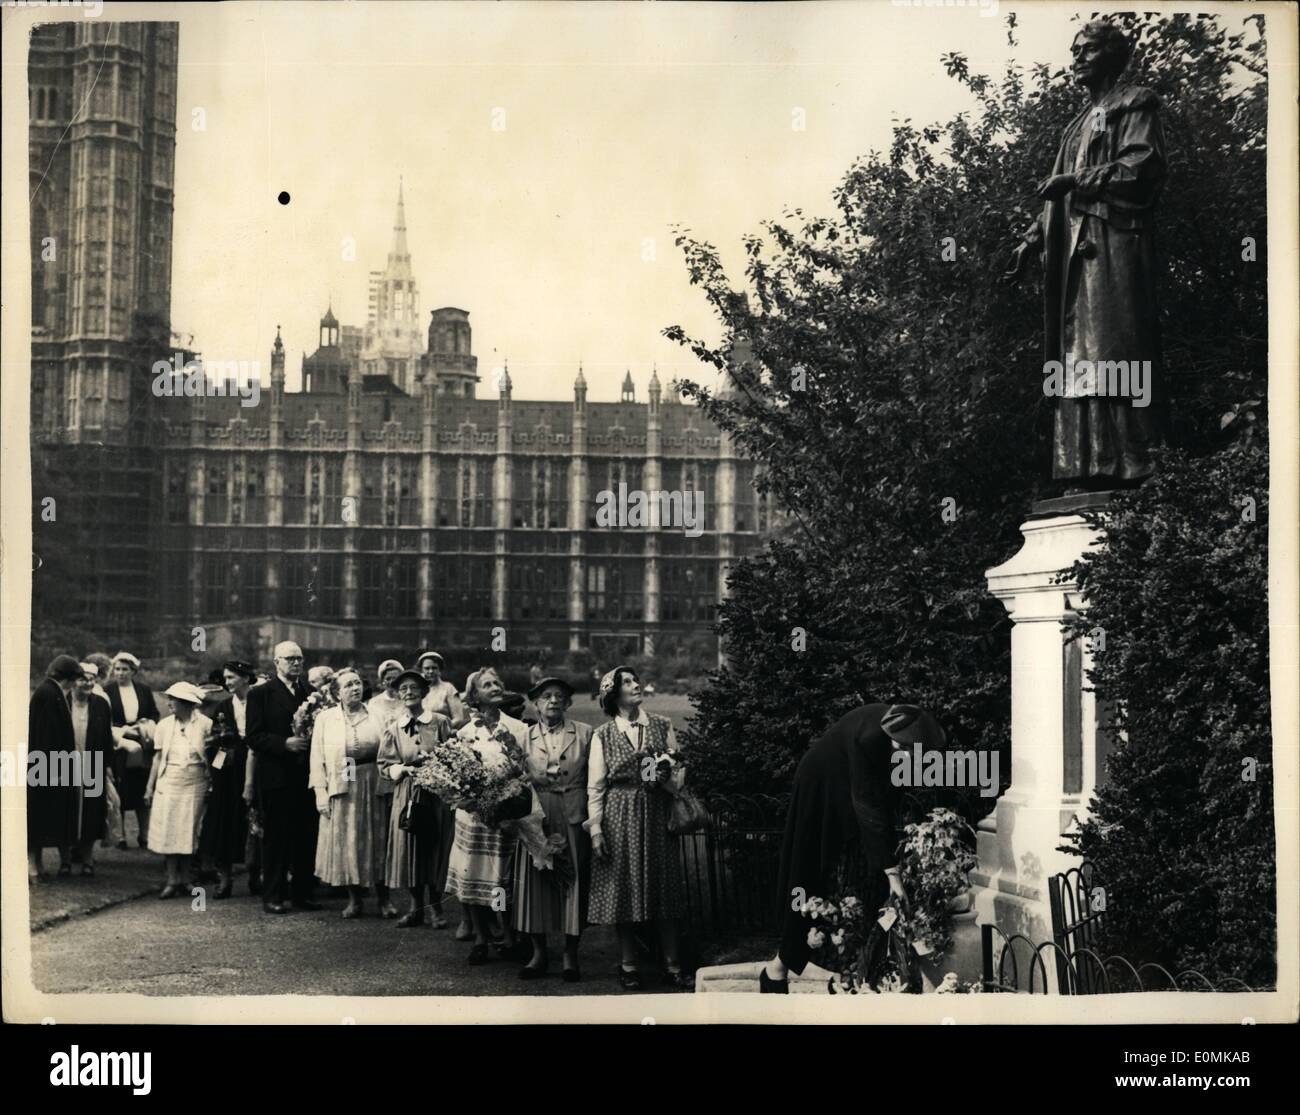 07 juillet 1955 - anniversaire de l'anniversaire de Mme Pankhurst fleurs posées à la statue. Des suffragettes ont déposé des fleurs à la statue de Victoria Tower Gardens, Westminster de leur chef, Mme Pankhurst, pour célébrer aujourd'hui l'anniversaire de son anniversaire. Depuis 25 ans, les femmes rendent hommage à Mme P~nkhurst sur cette place. Photos: Monsieur J.T. Taylor, mari de feu Annie Kenney, qui a envoyé en prison avec Mme Pankhurst, est le seul homme dans la file d'attente attendant les fleurs au pied de la statue. Banque D'Images